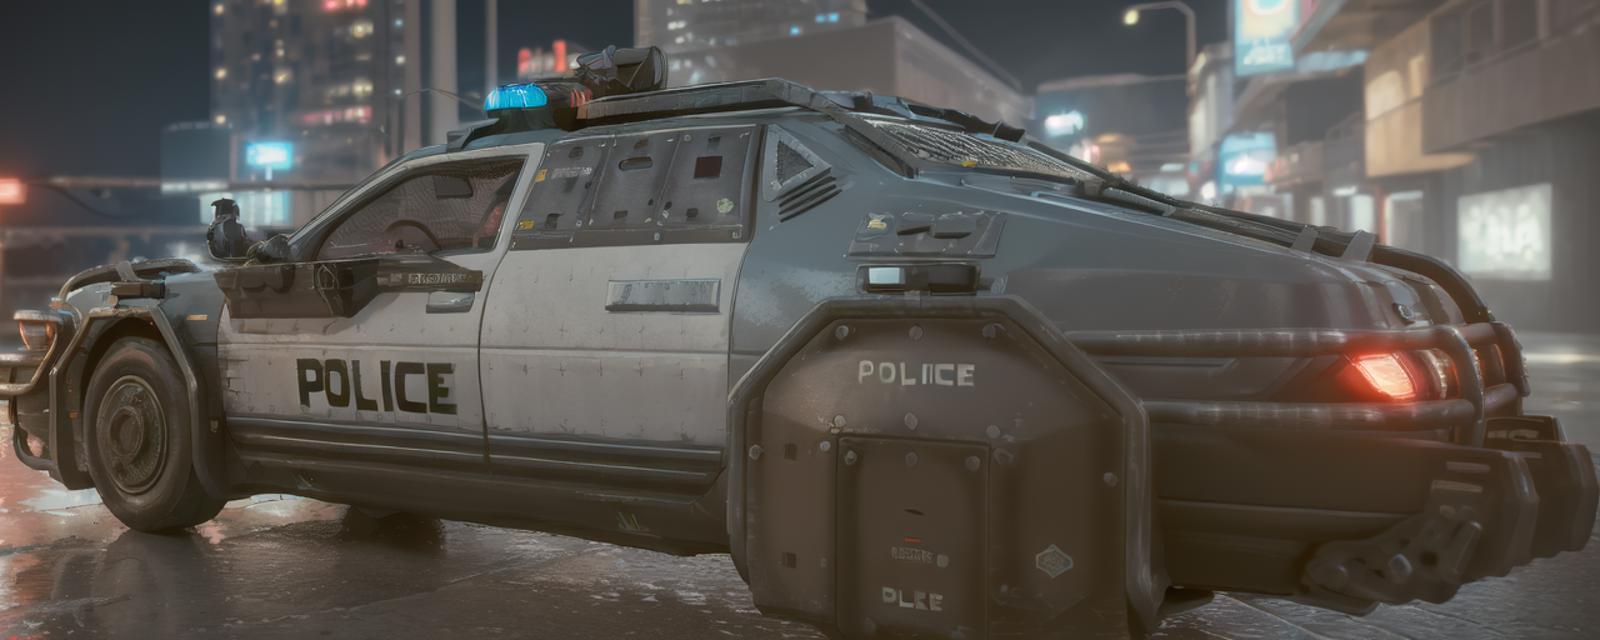 Cyberpunk 2077 NCPD Car (Hella EC-H I860 Enforcer) image by ehowton